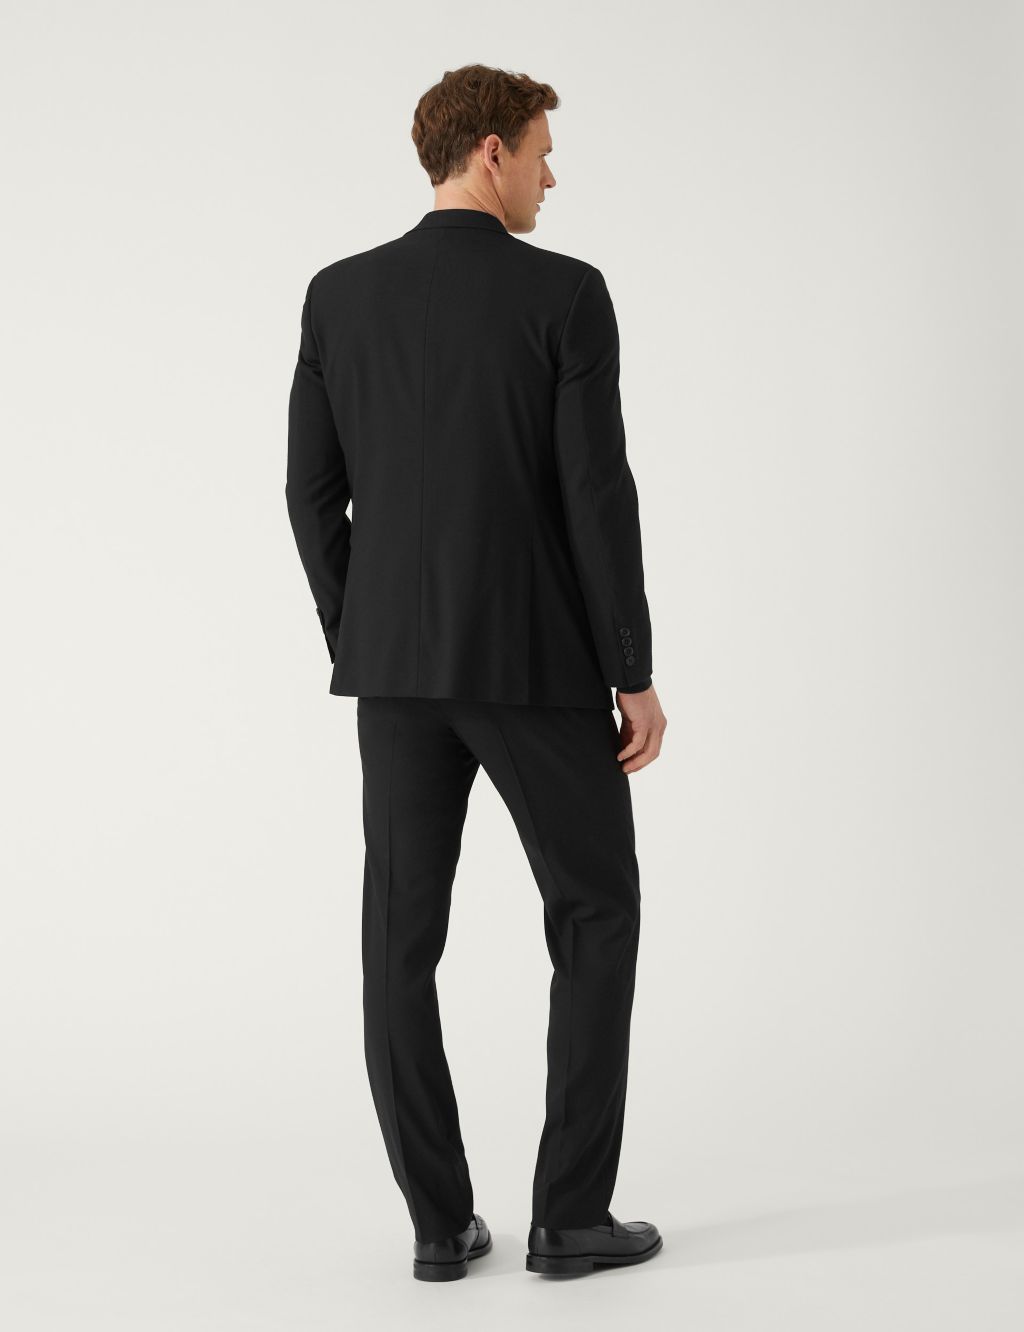 Men's Black Suits | M&S